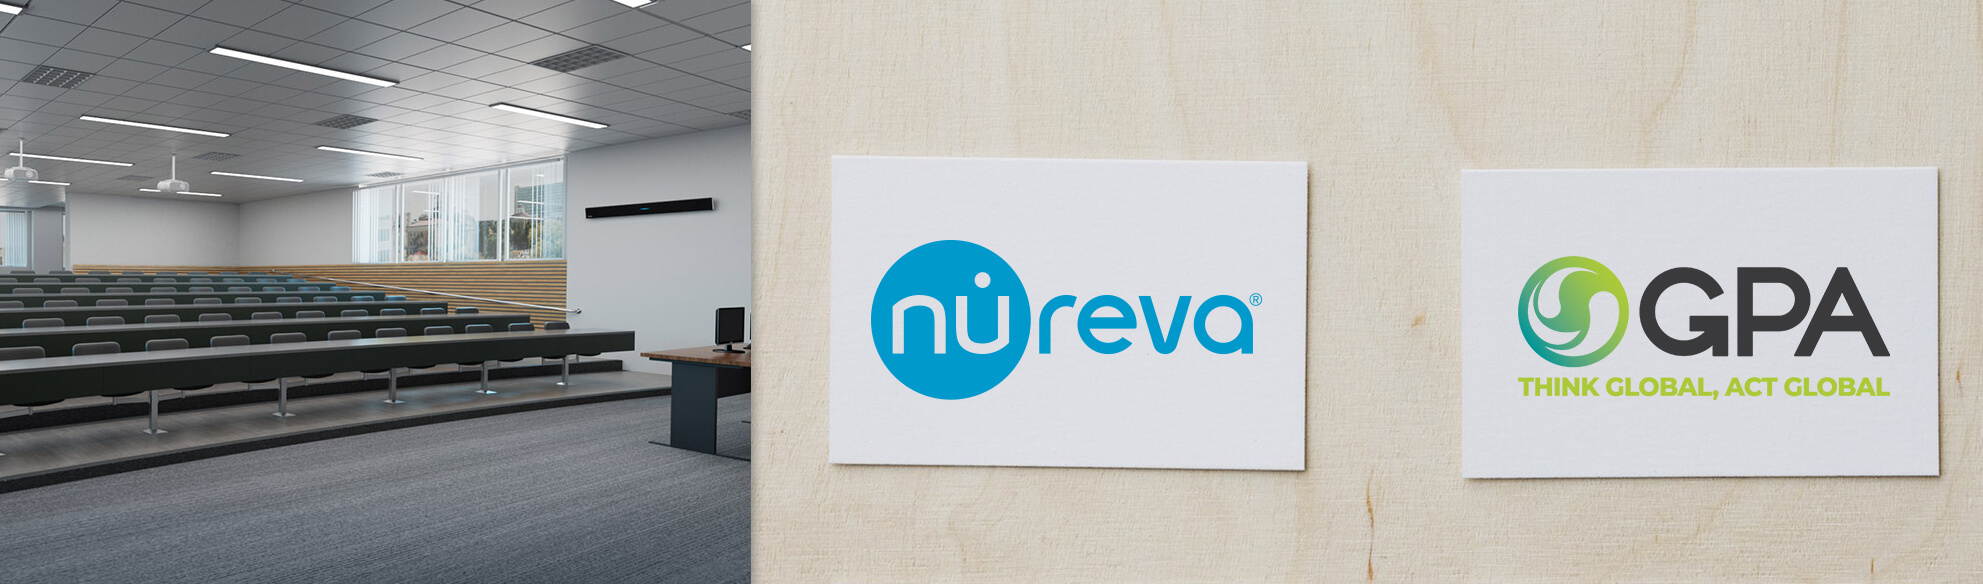 gpa and nureva partnership